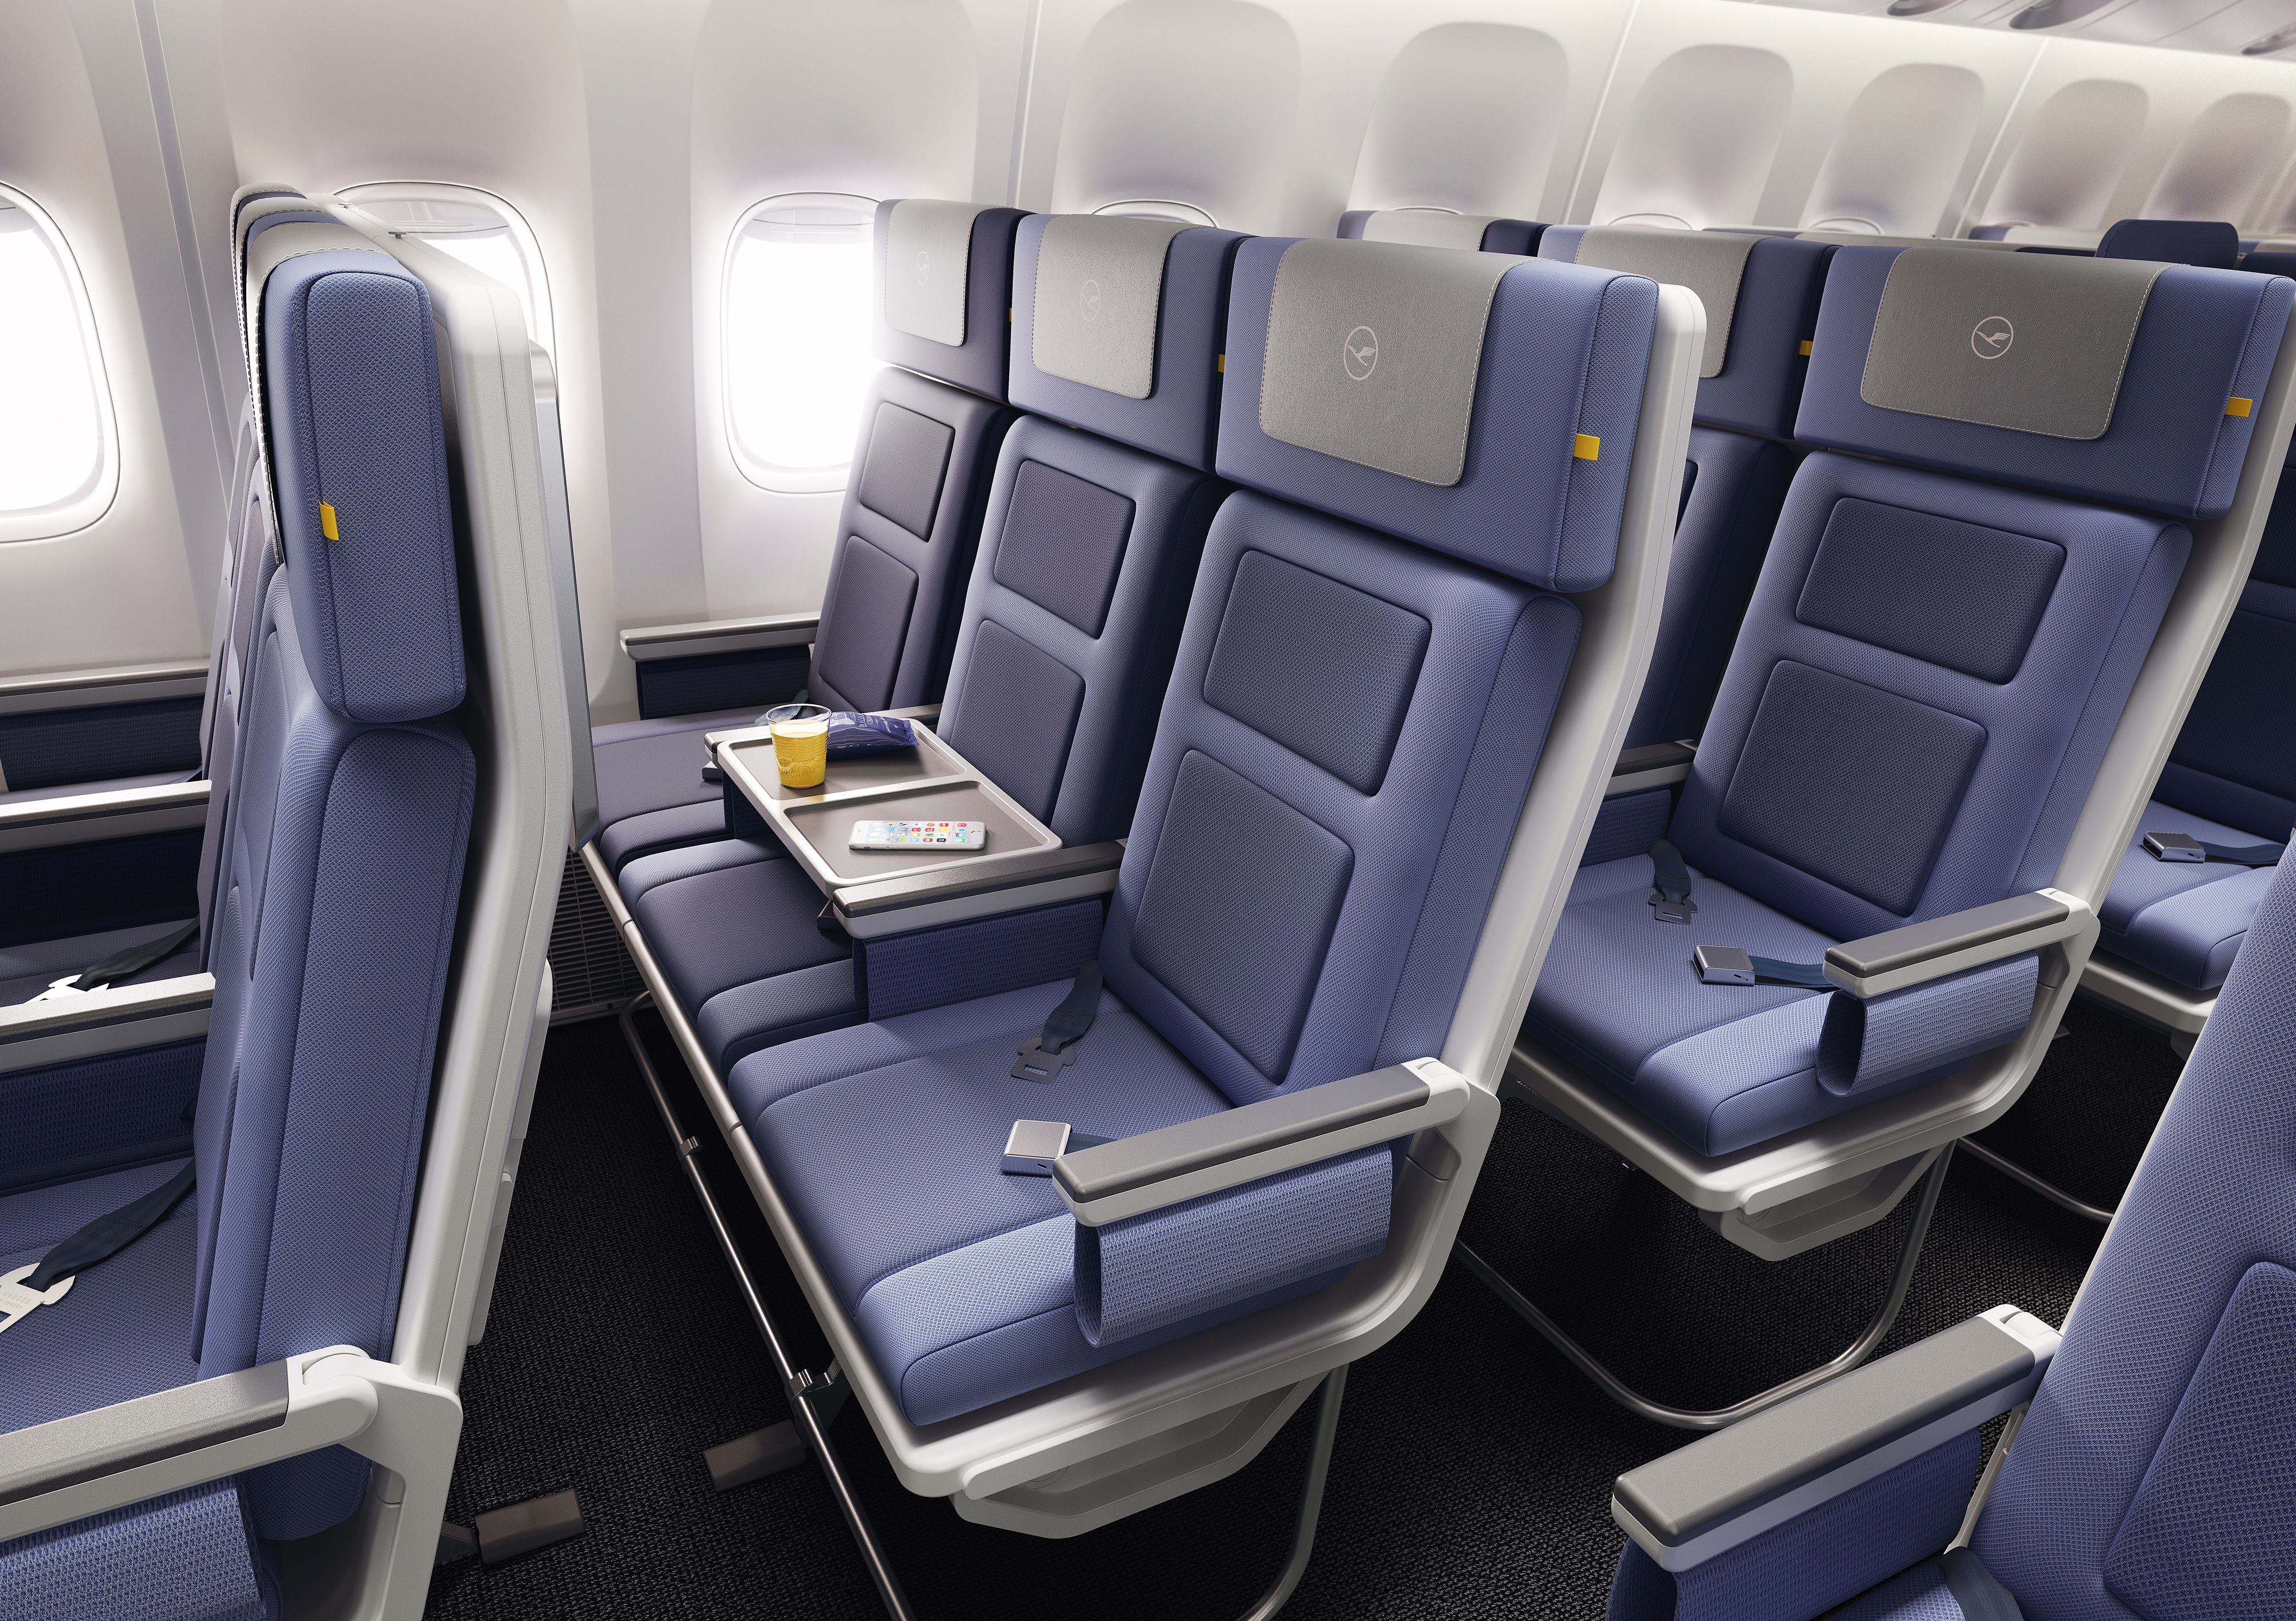 Lufthansa economy seats under Allegris